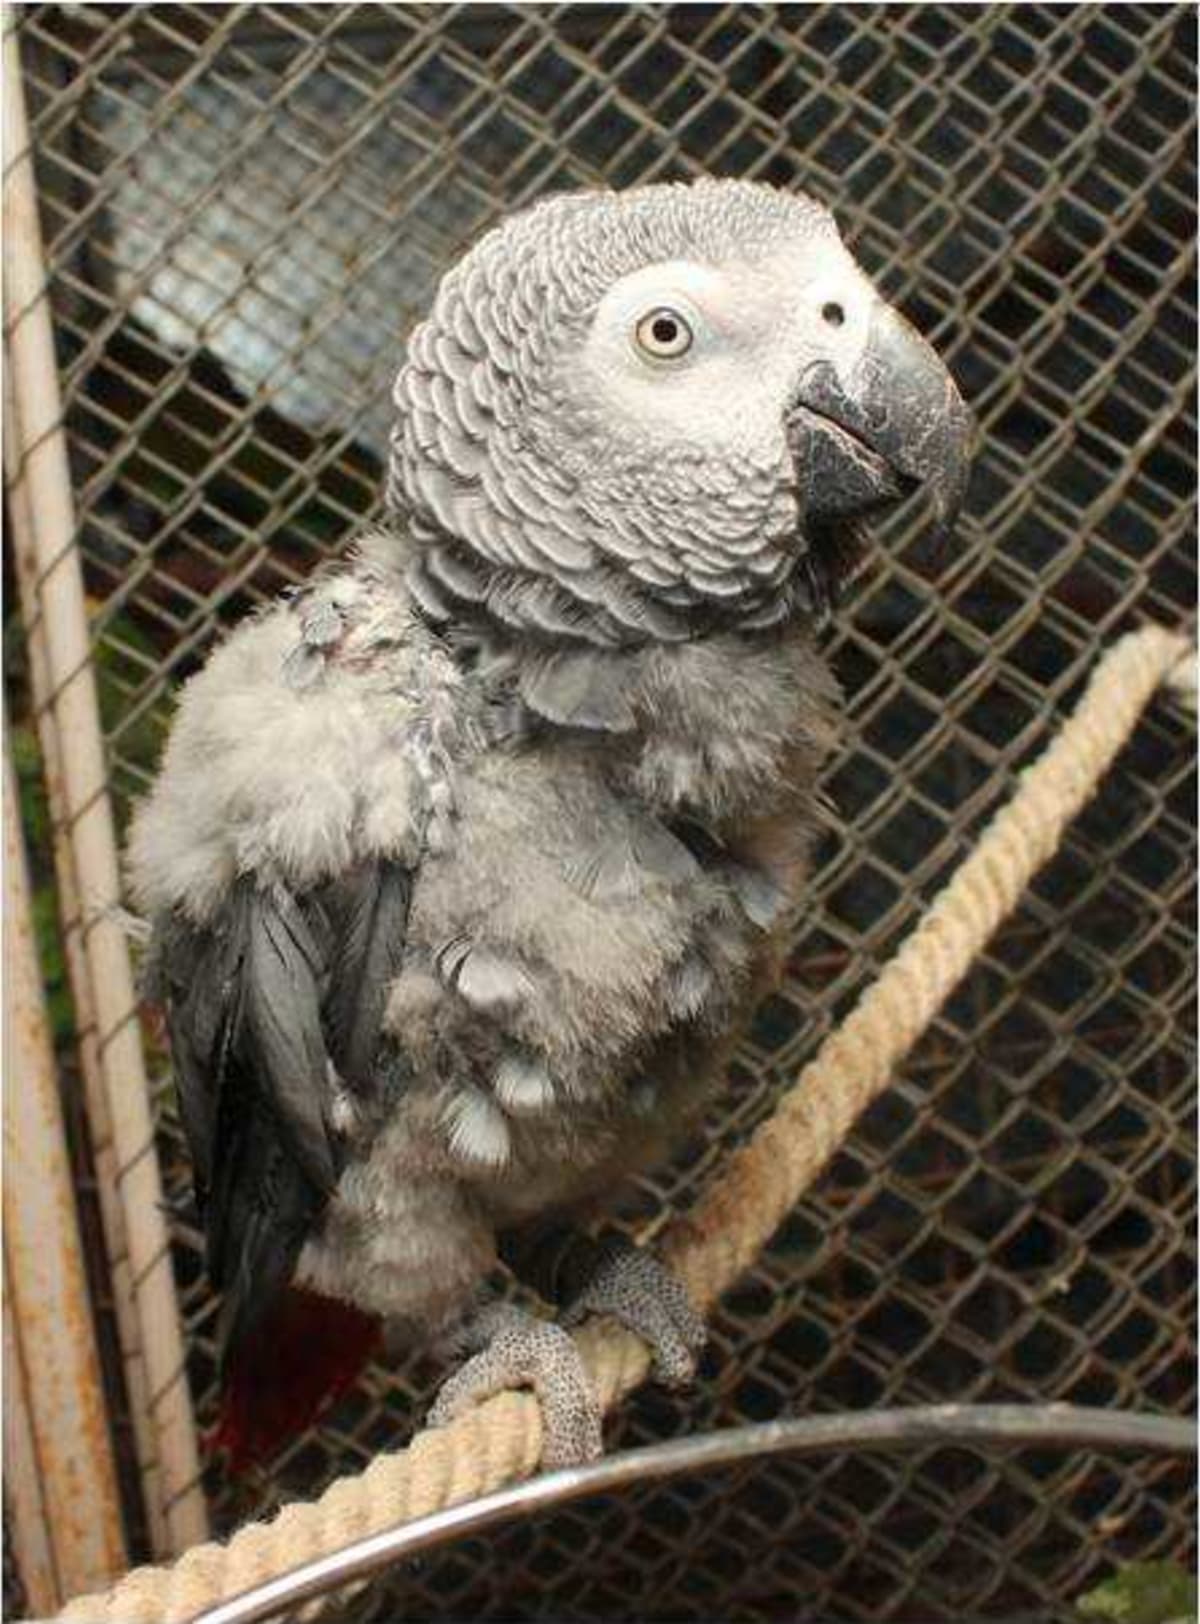 Papouška spolek převzal ve špatném zdravotním stavu, jeho léčba poškozených vnitřních orgánů trvala asi rok, poté následovala doživotní dieta a pravidelné veterinární vyšetření krve z důvodu poškozených jater a částečně i ledvin. Je trvale na dietním pr...